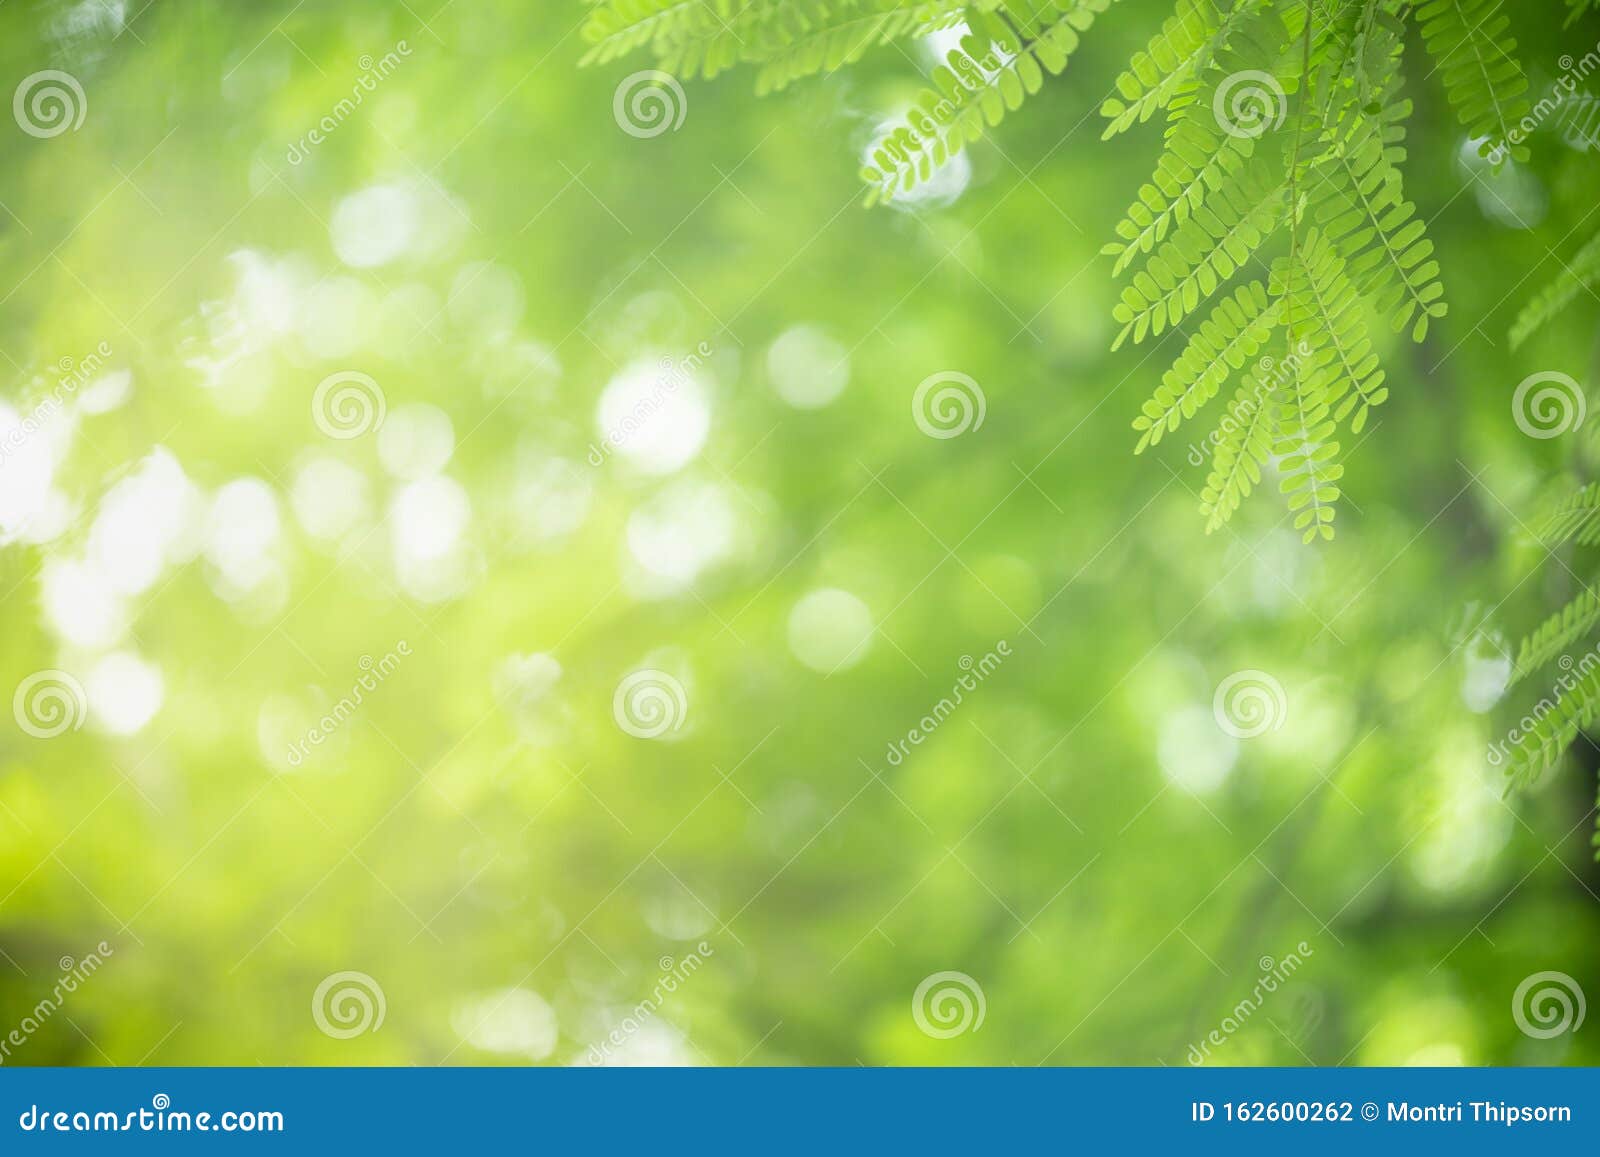 Bạn muốn thực sự đắm mình vào thiên nhiên? Hãy xem những hình ảnh lá xanh gần cảnh tự nhiên trên nền xanh lá cây mờ. Chúng sẽ khiến bạn có cảm giác như đang ngắm cảnh ngoài trời và hít thở không khí trong lành. 